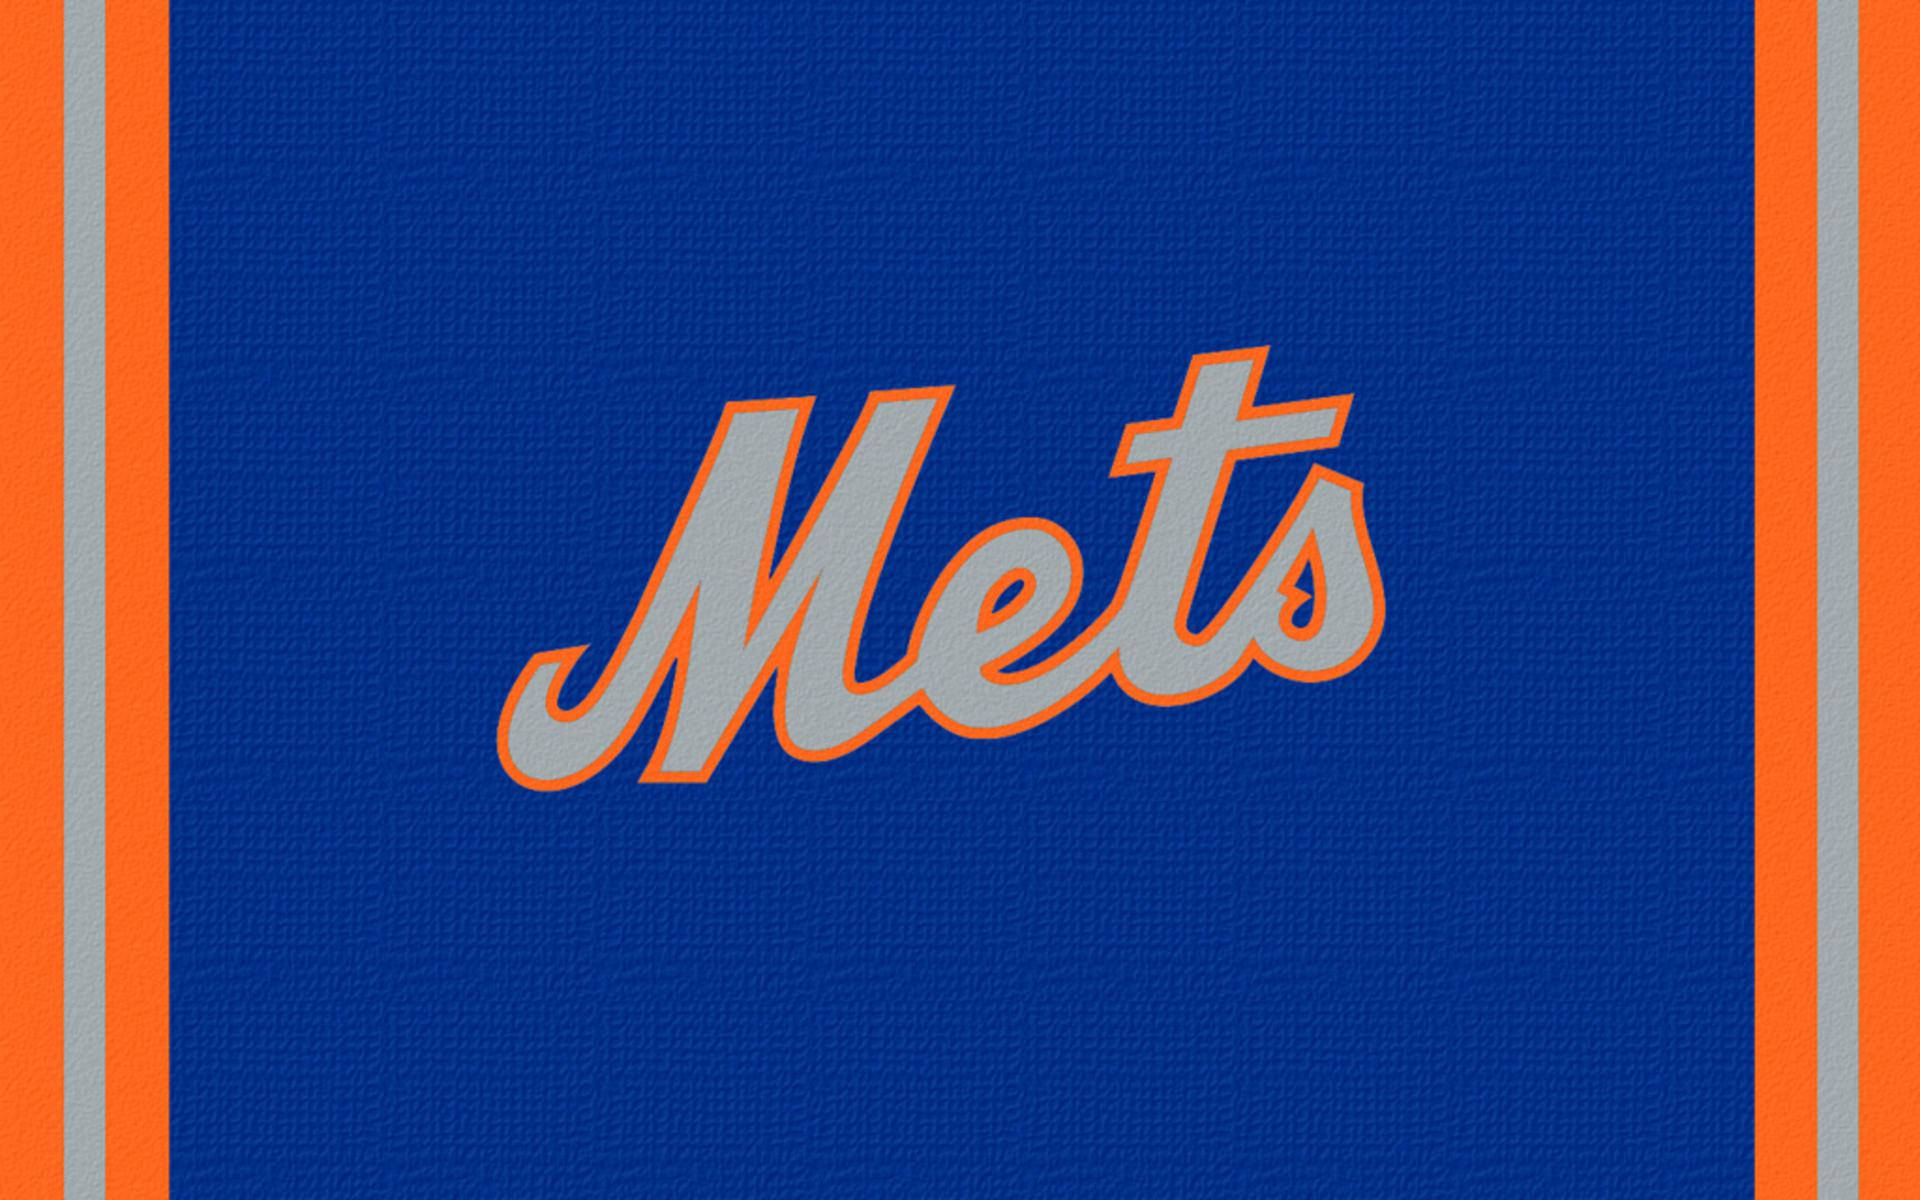 48 New York Mets Wallpapers